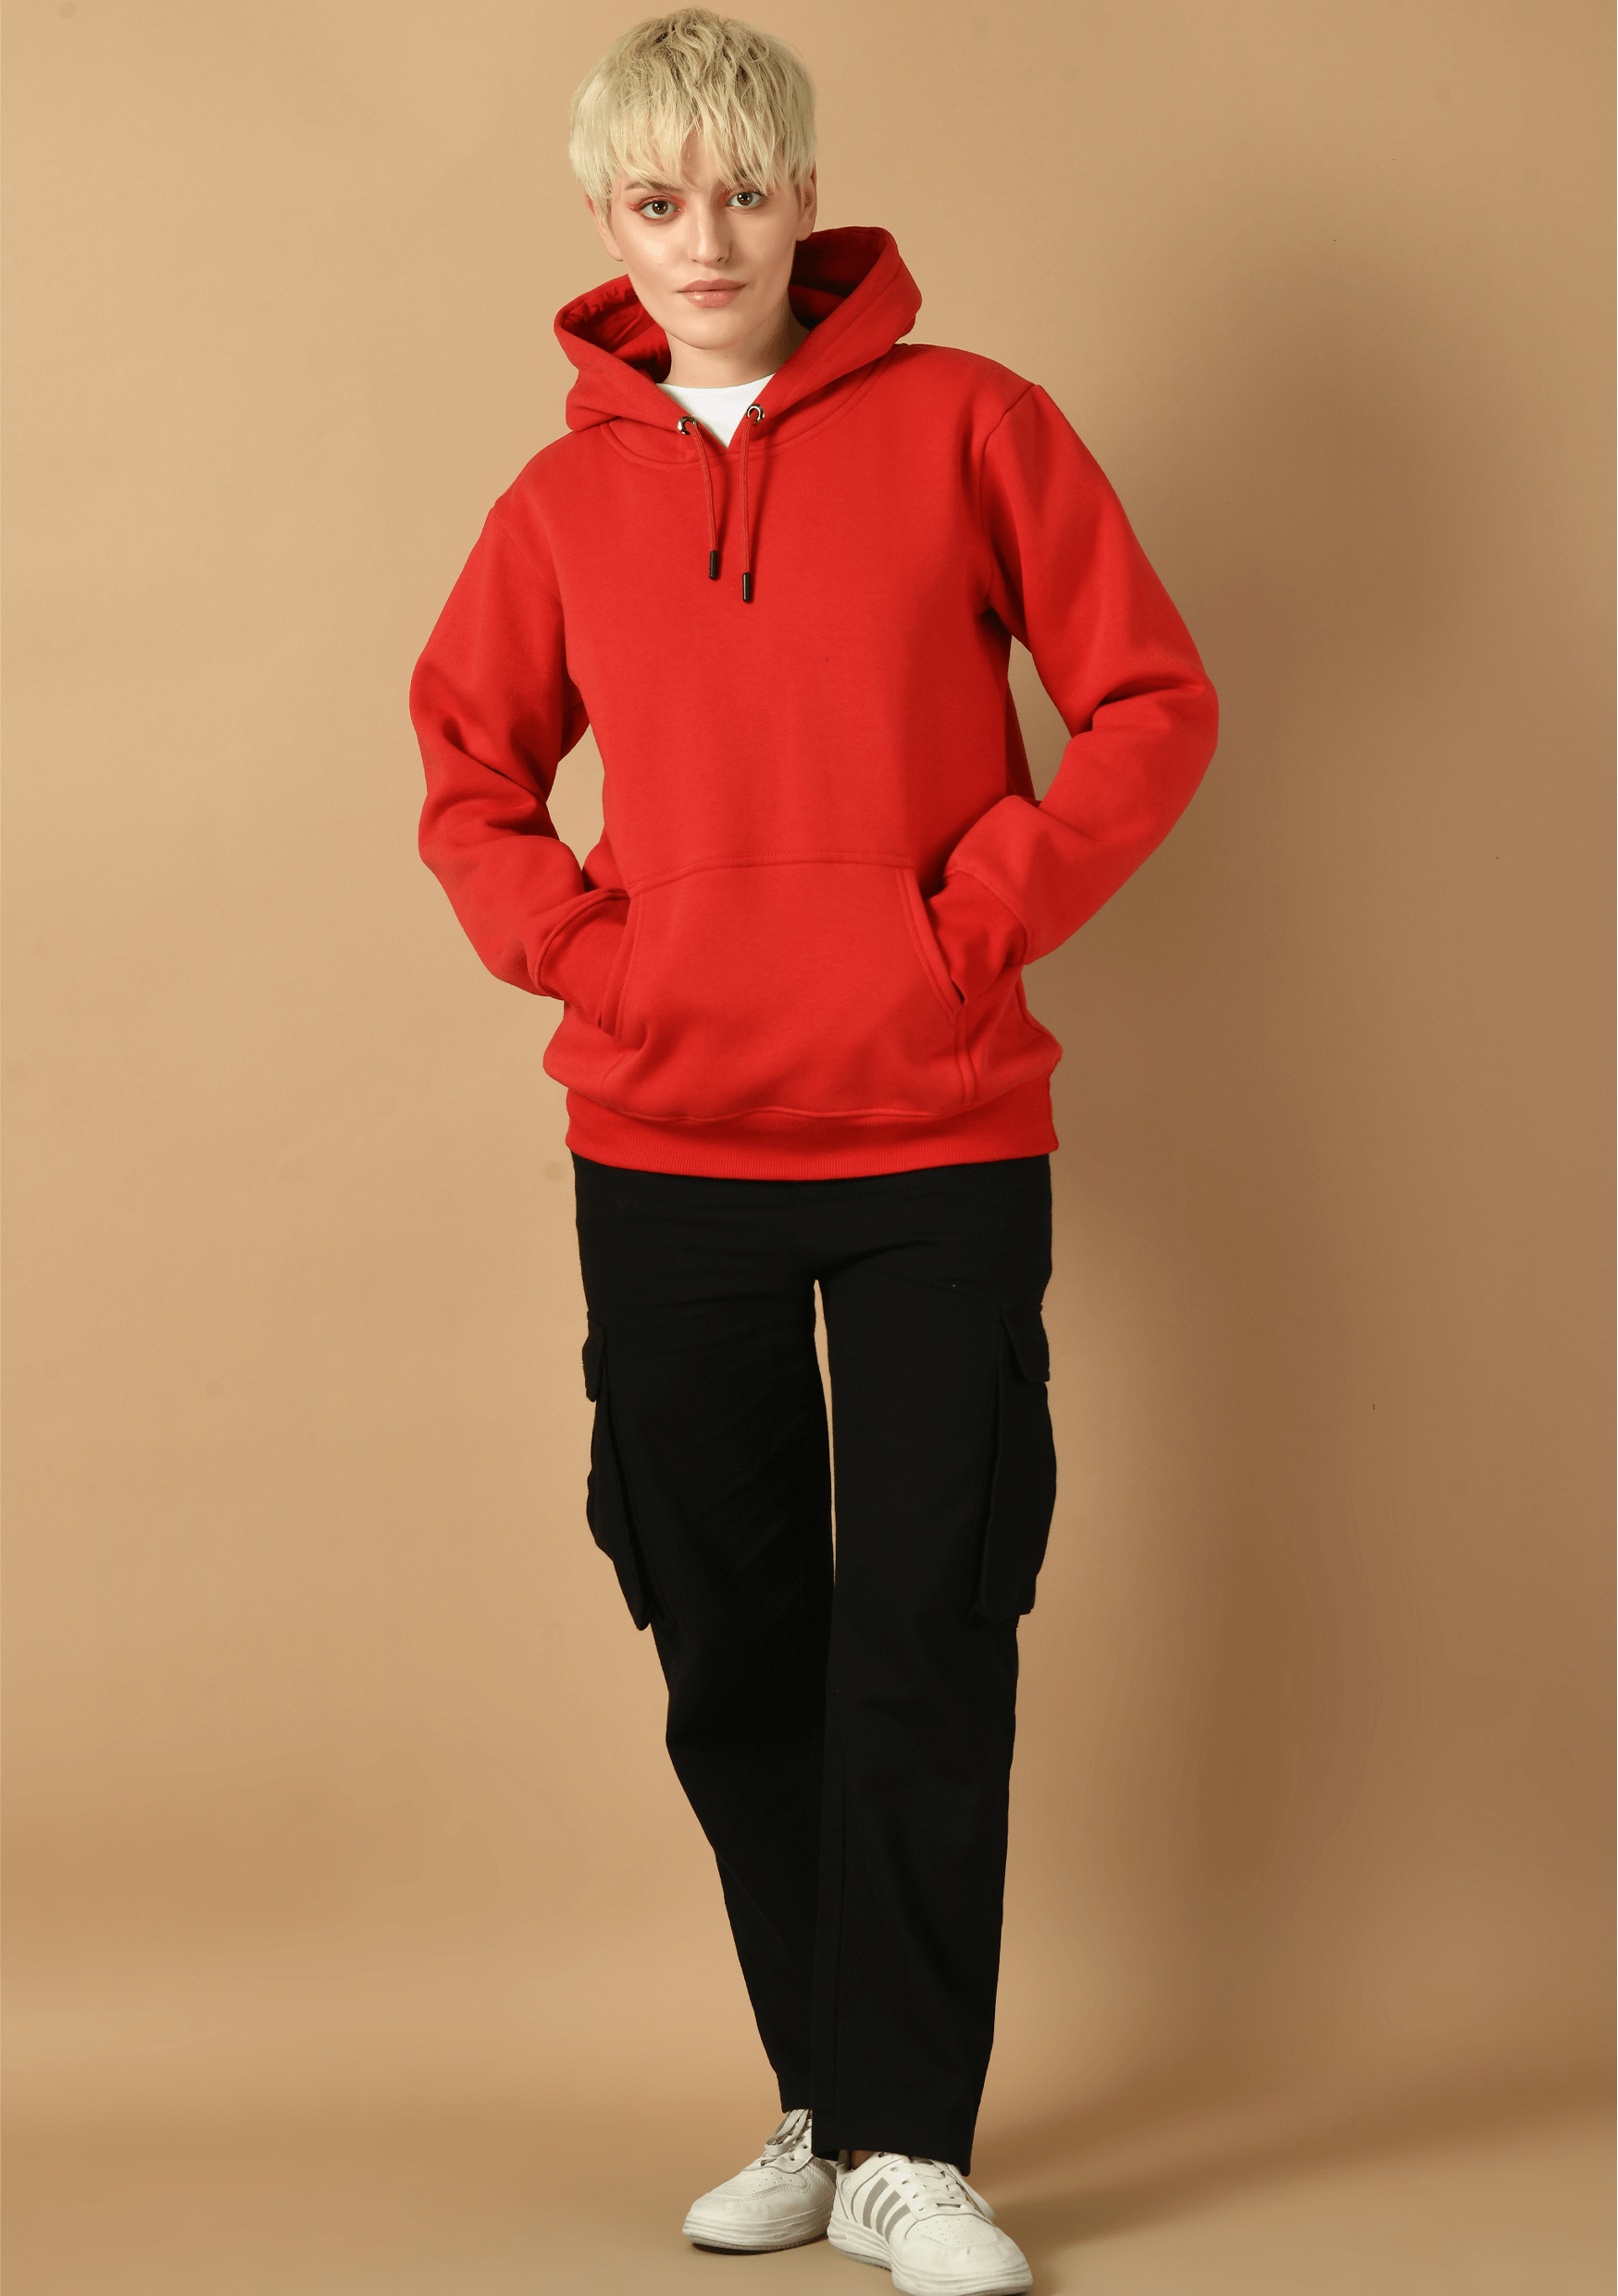 Skate printed red women hoodie by offmint